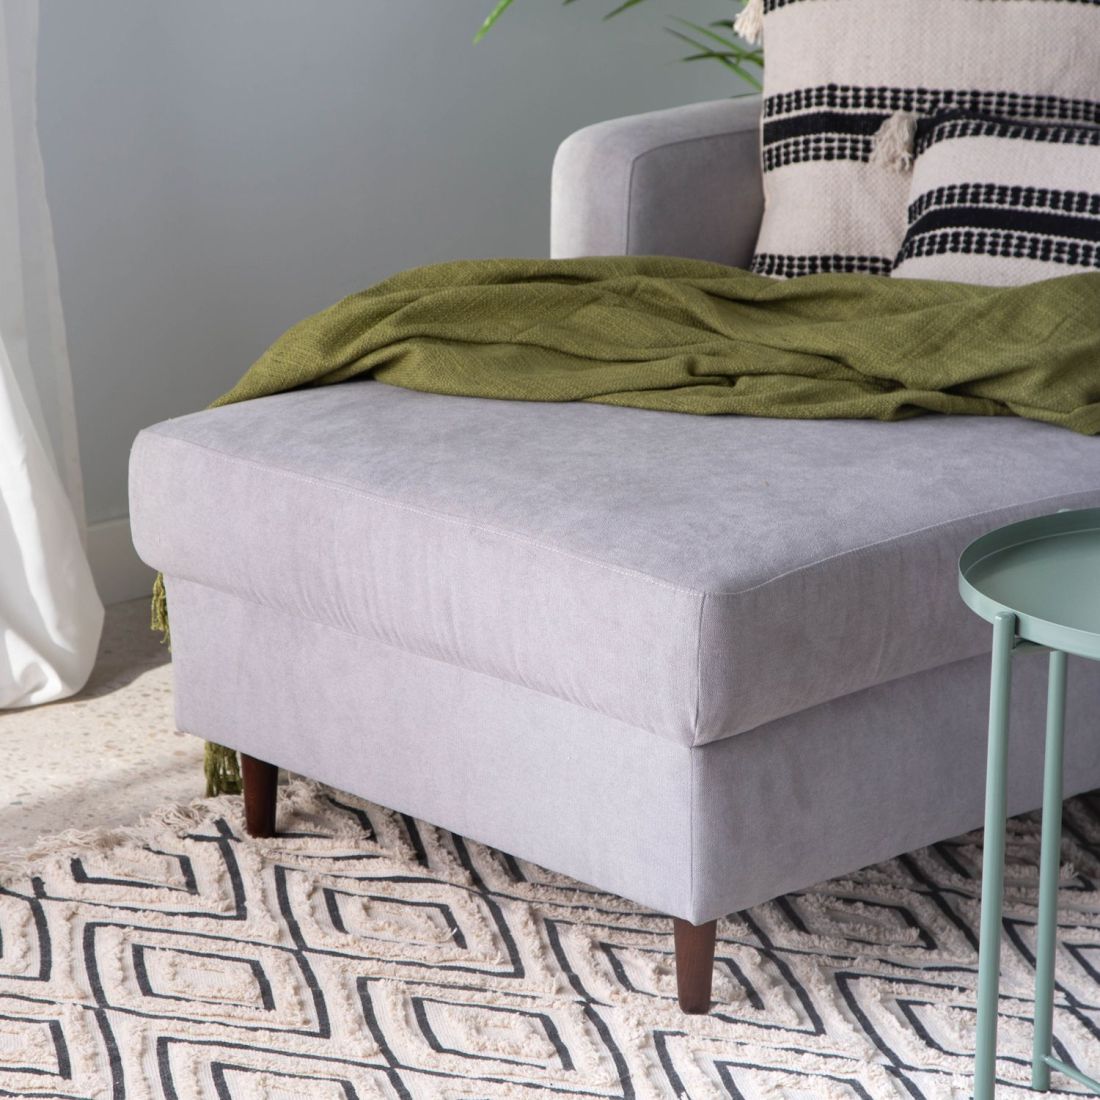 Comprar plaid cama de algodón. Textil hogar online